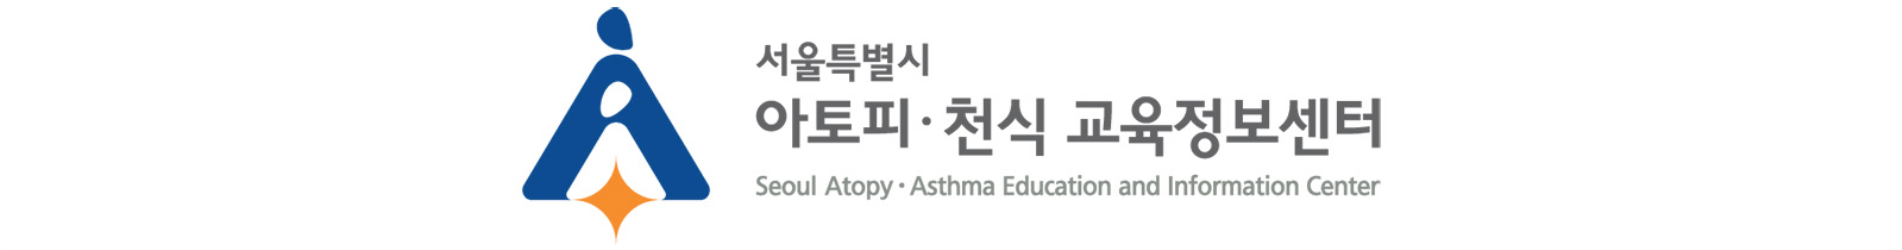 서울특별시 아토피·천식 교육정보센터